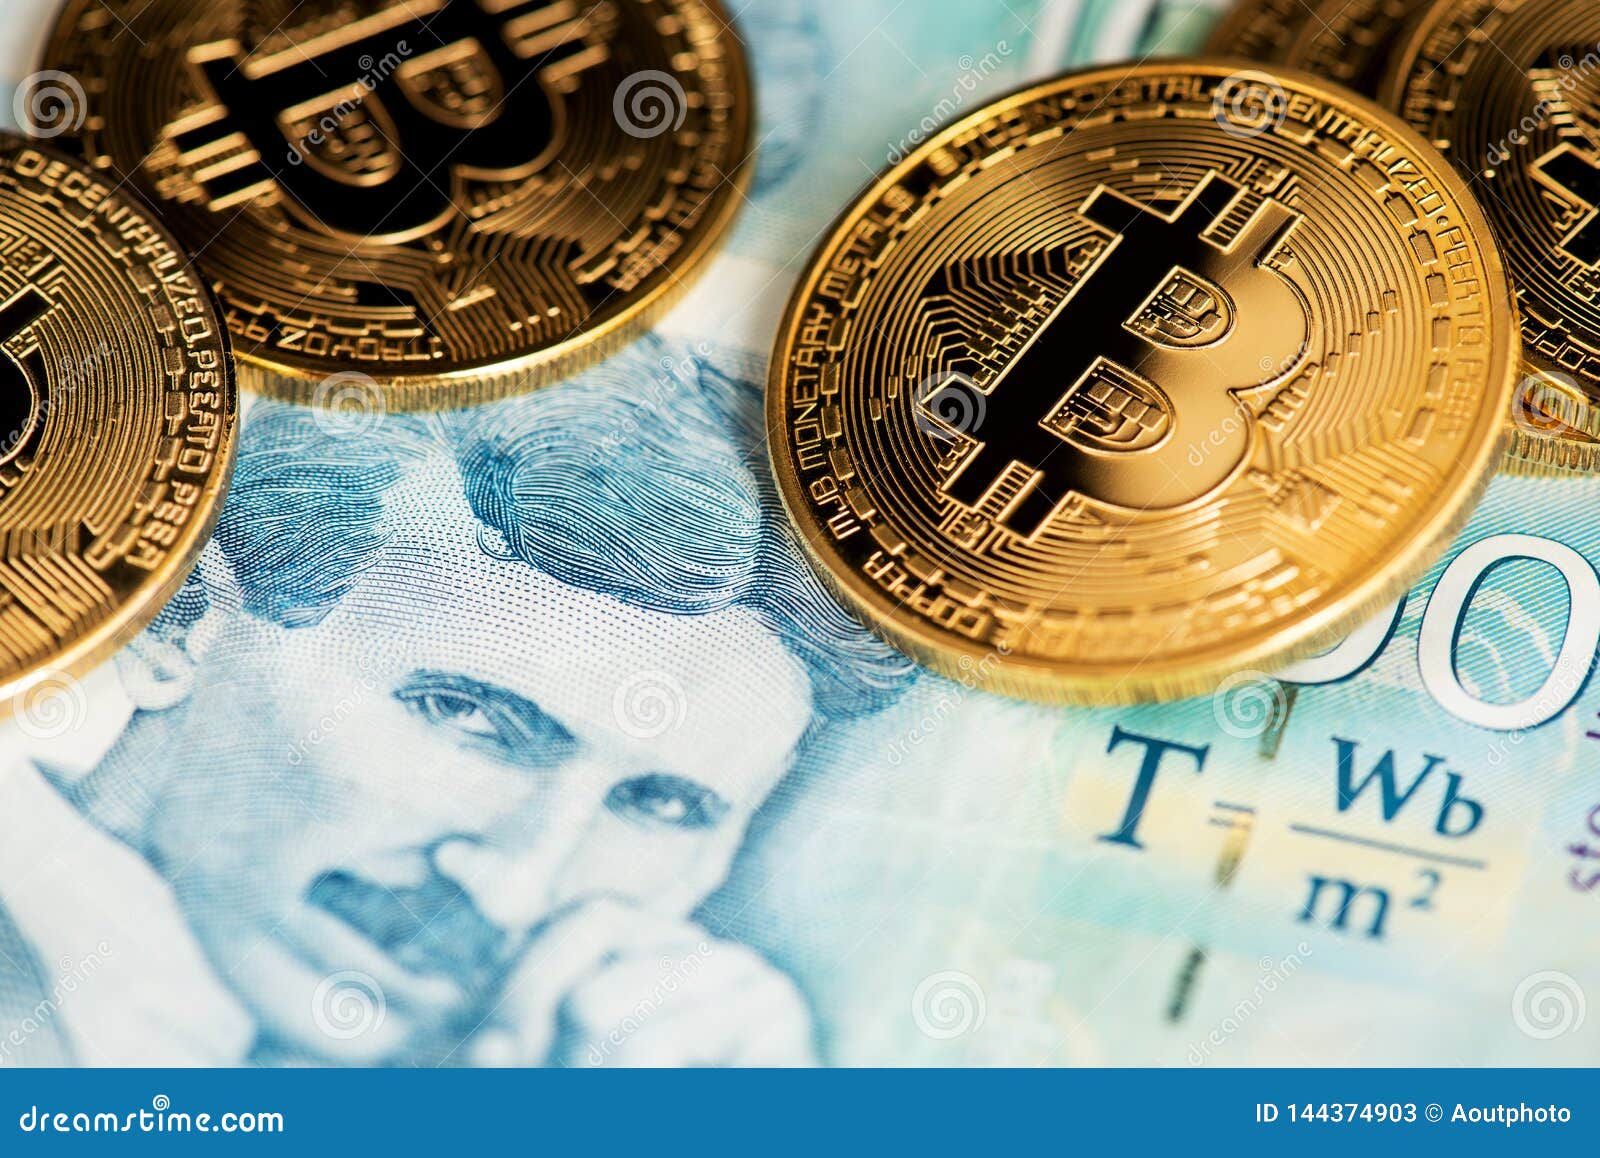 bitcoin la kuwaiti dinar bitcoin transaction tax calculator